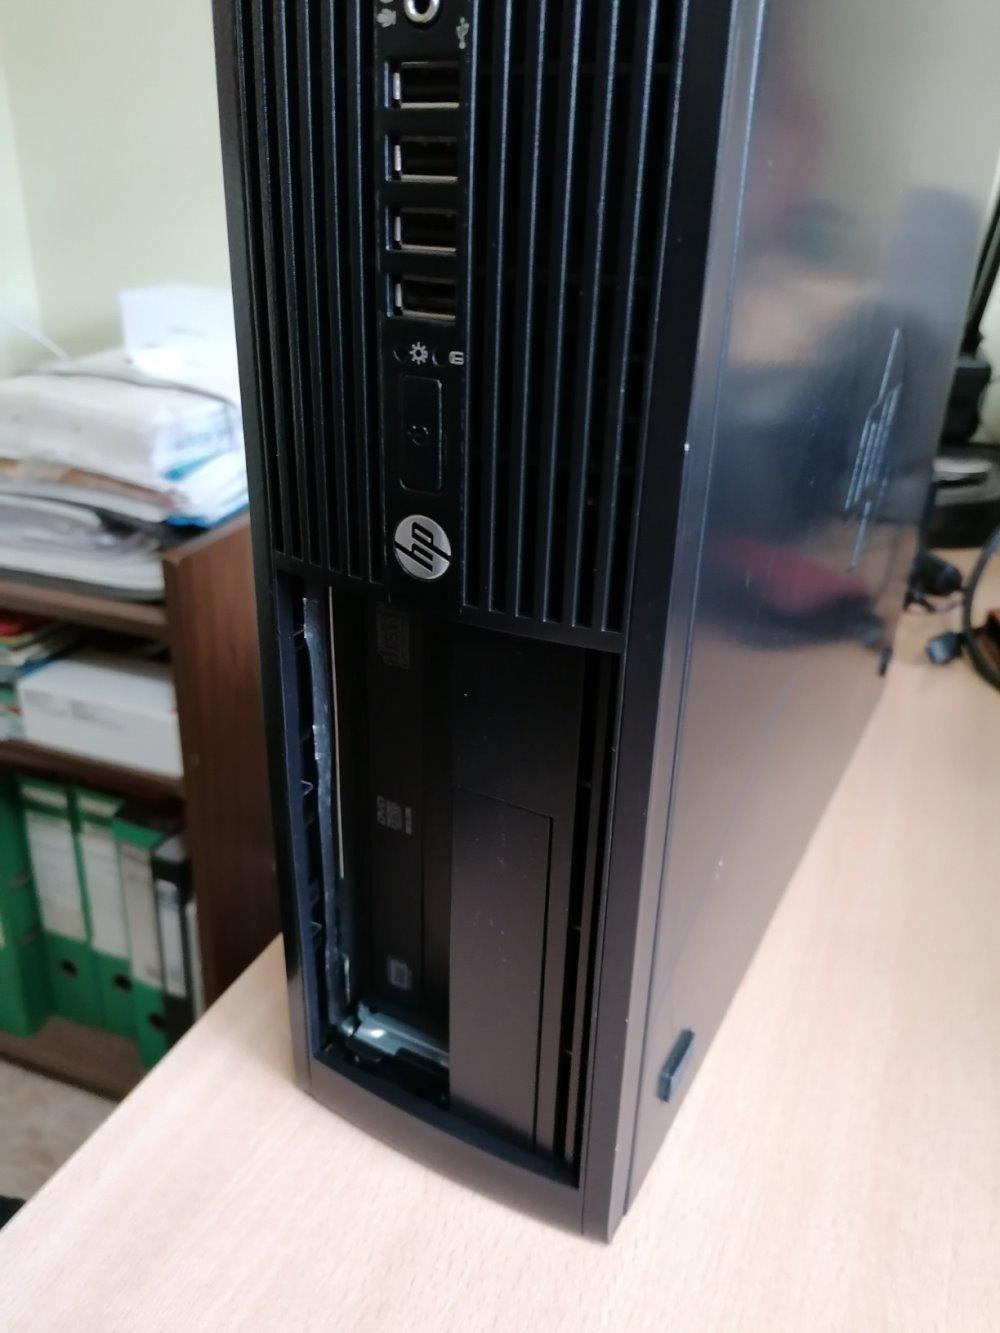 HP Elite 8300